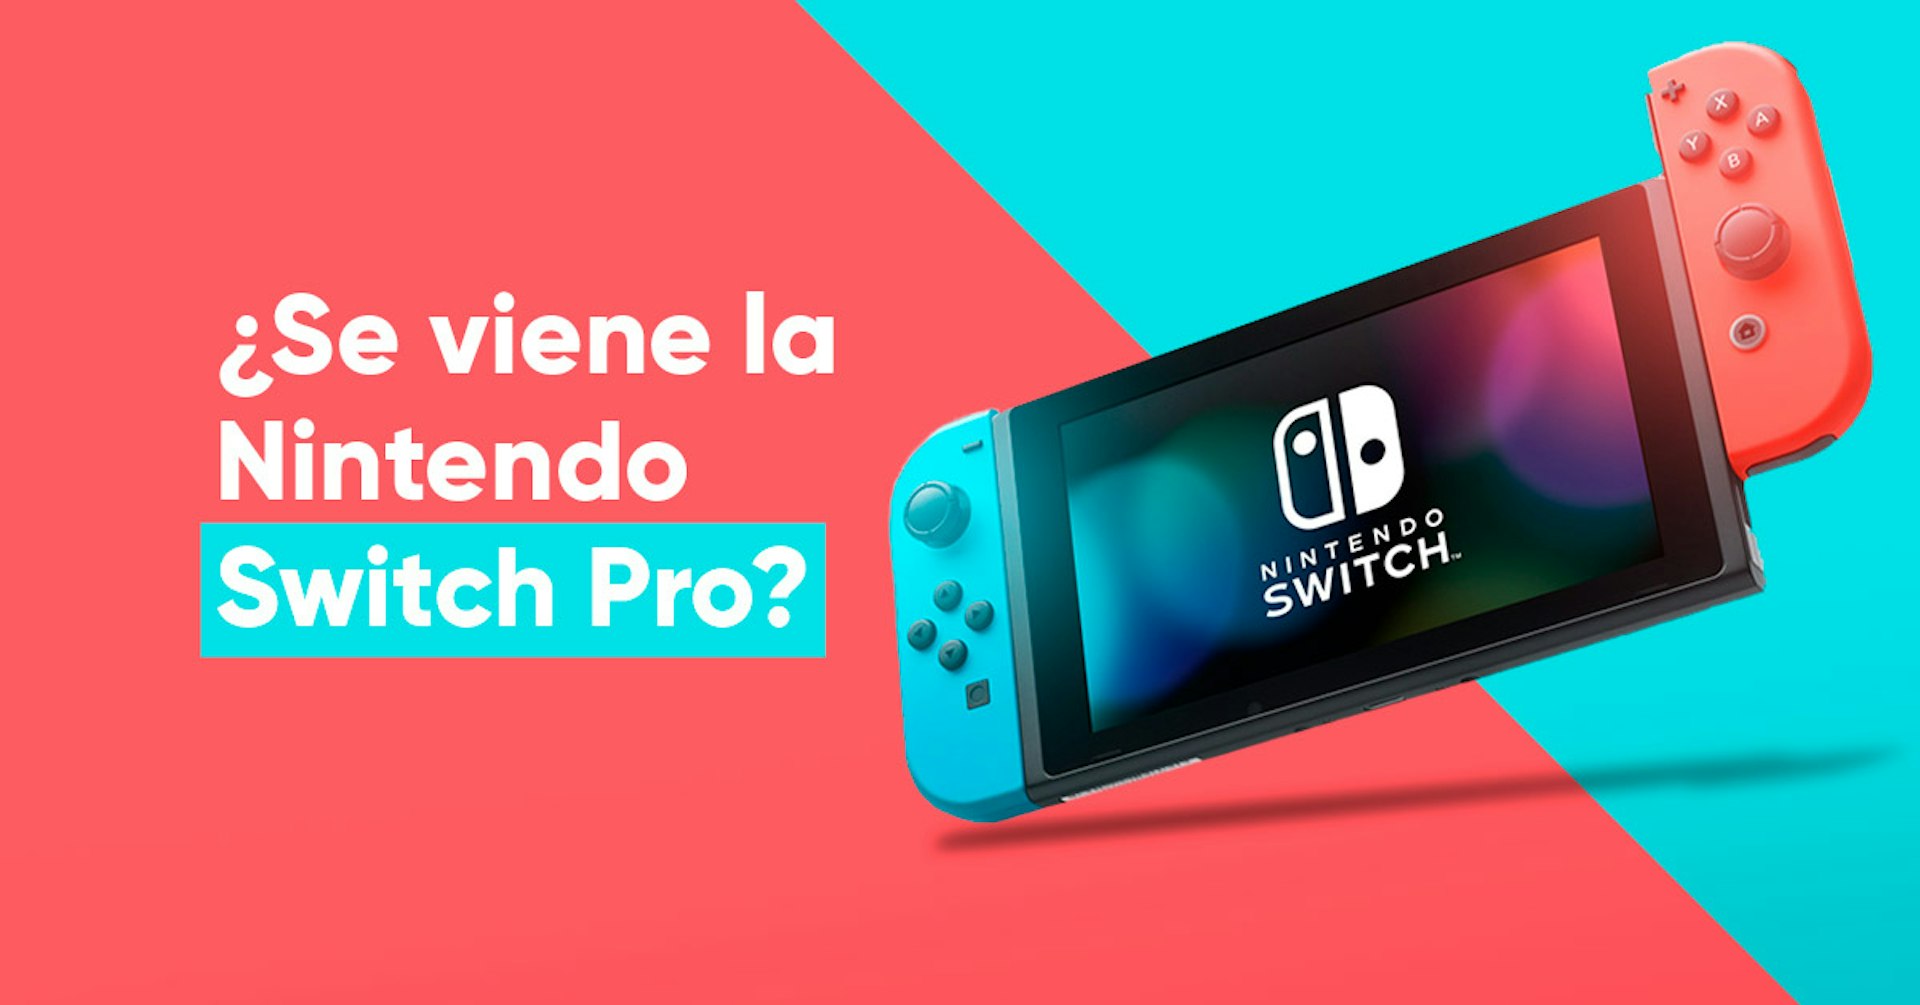 ¿Se viene una versión Pro de Nintendo Switch?